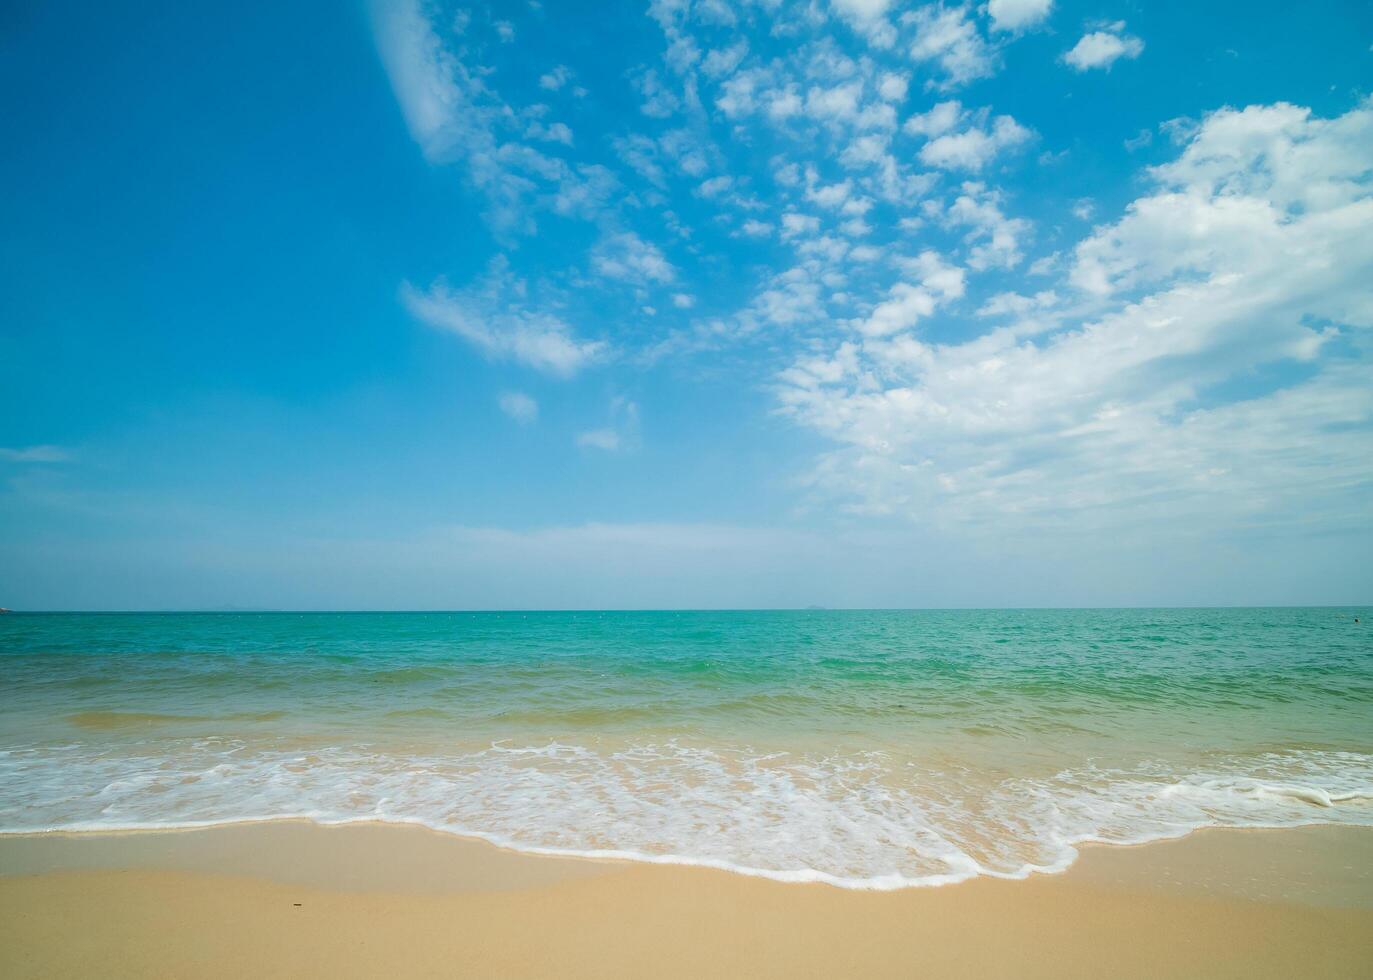 horizon landschap zomer seizoen panorama voorkant visie punt tropisch zee strand wit zand schoon en blauw lucht achtergrond kalmte natuur oceaan mooi Golf water reizen Bij sai kaew strand Thailand vakantie foto